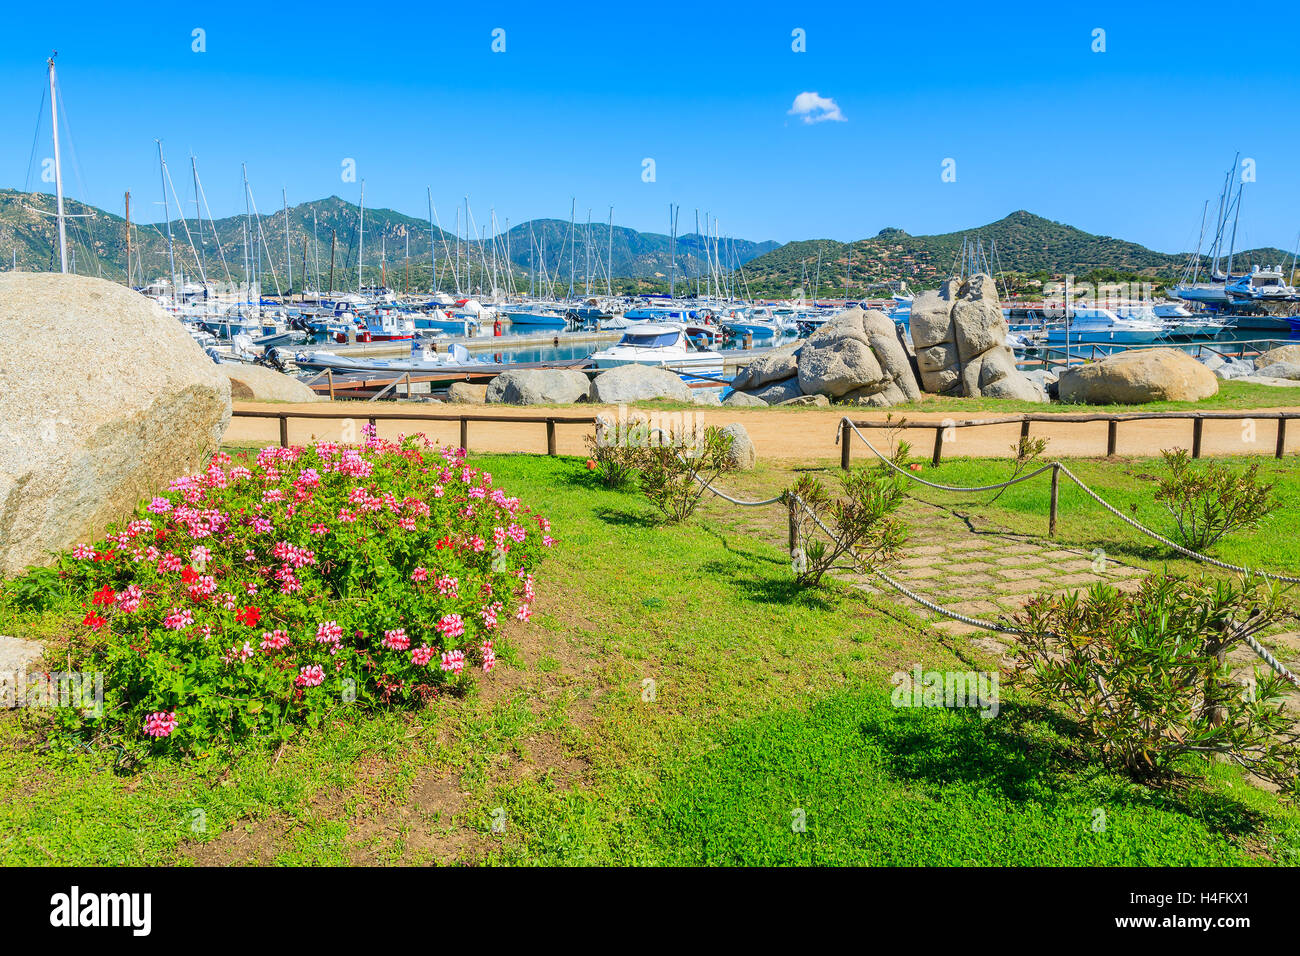 Gasse in einem Park von Porto Giunco Hafen, Insel Sardinien, Italien Stockfoto